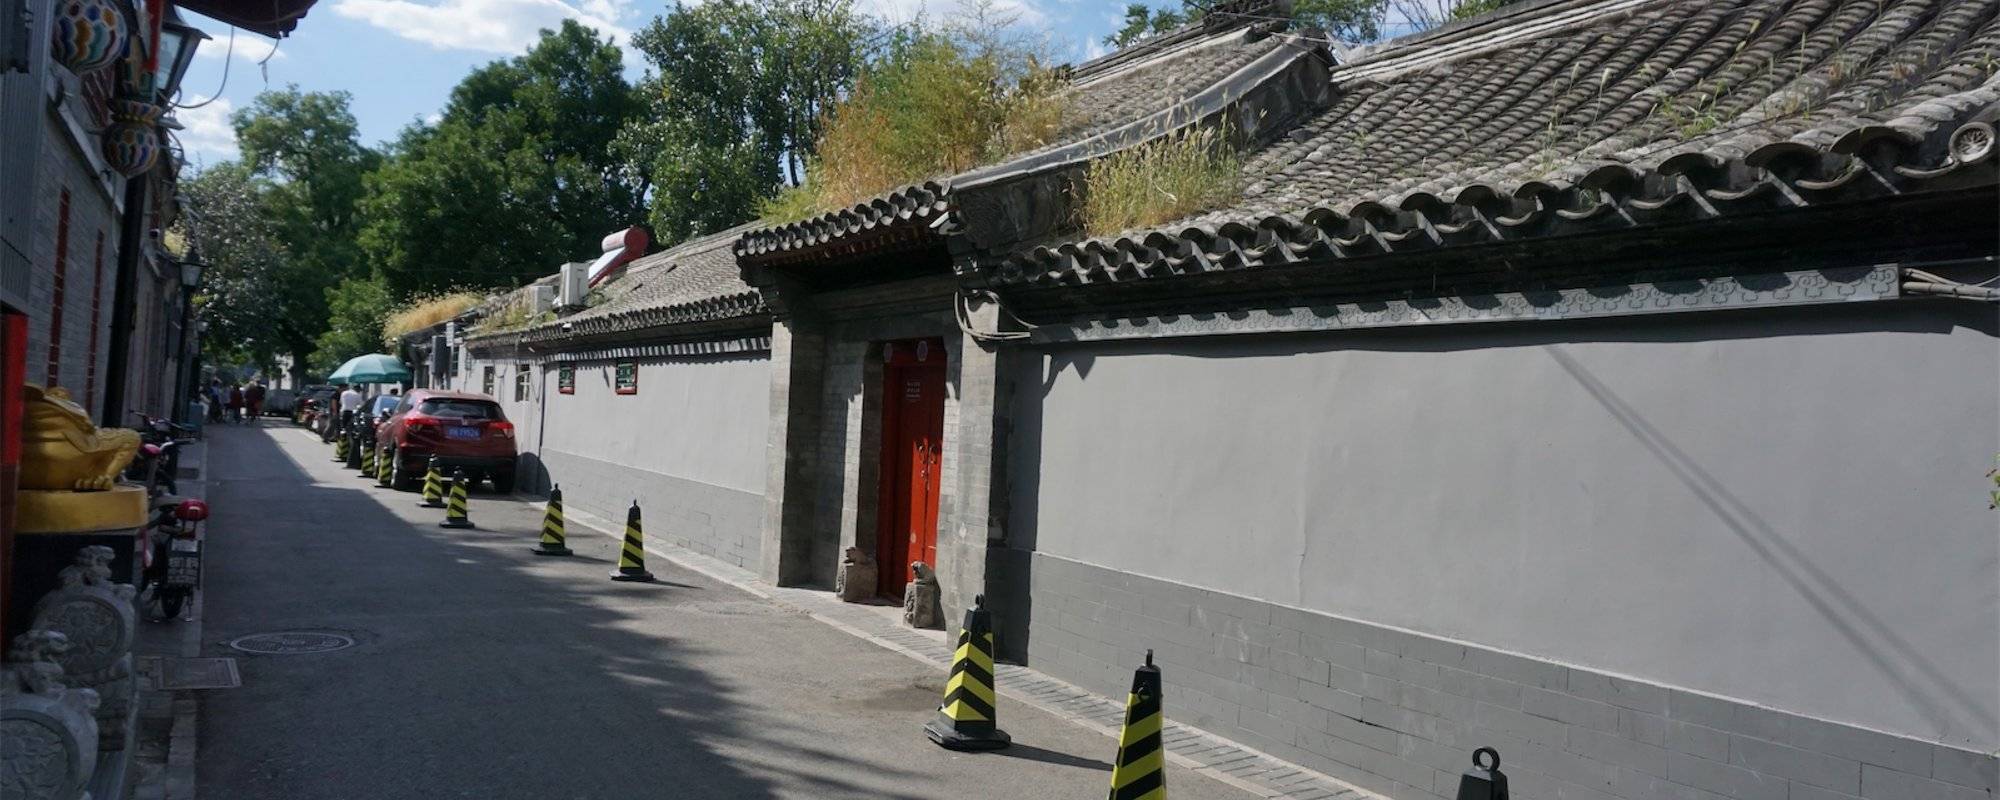 Travel to Beijing (6) - Hutong - Nanluoguxiang 北京之旅 - 胡同 - 南鑼鼓巷